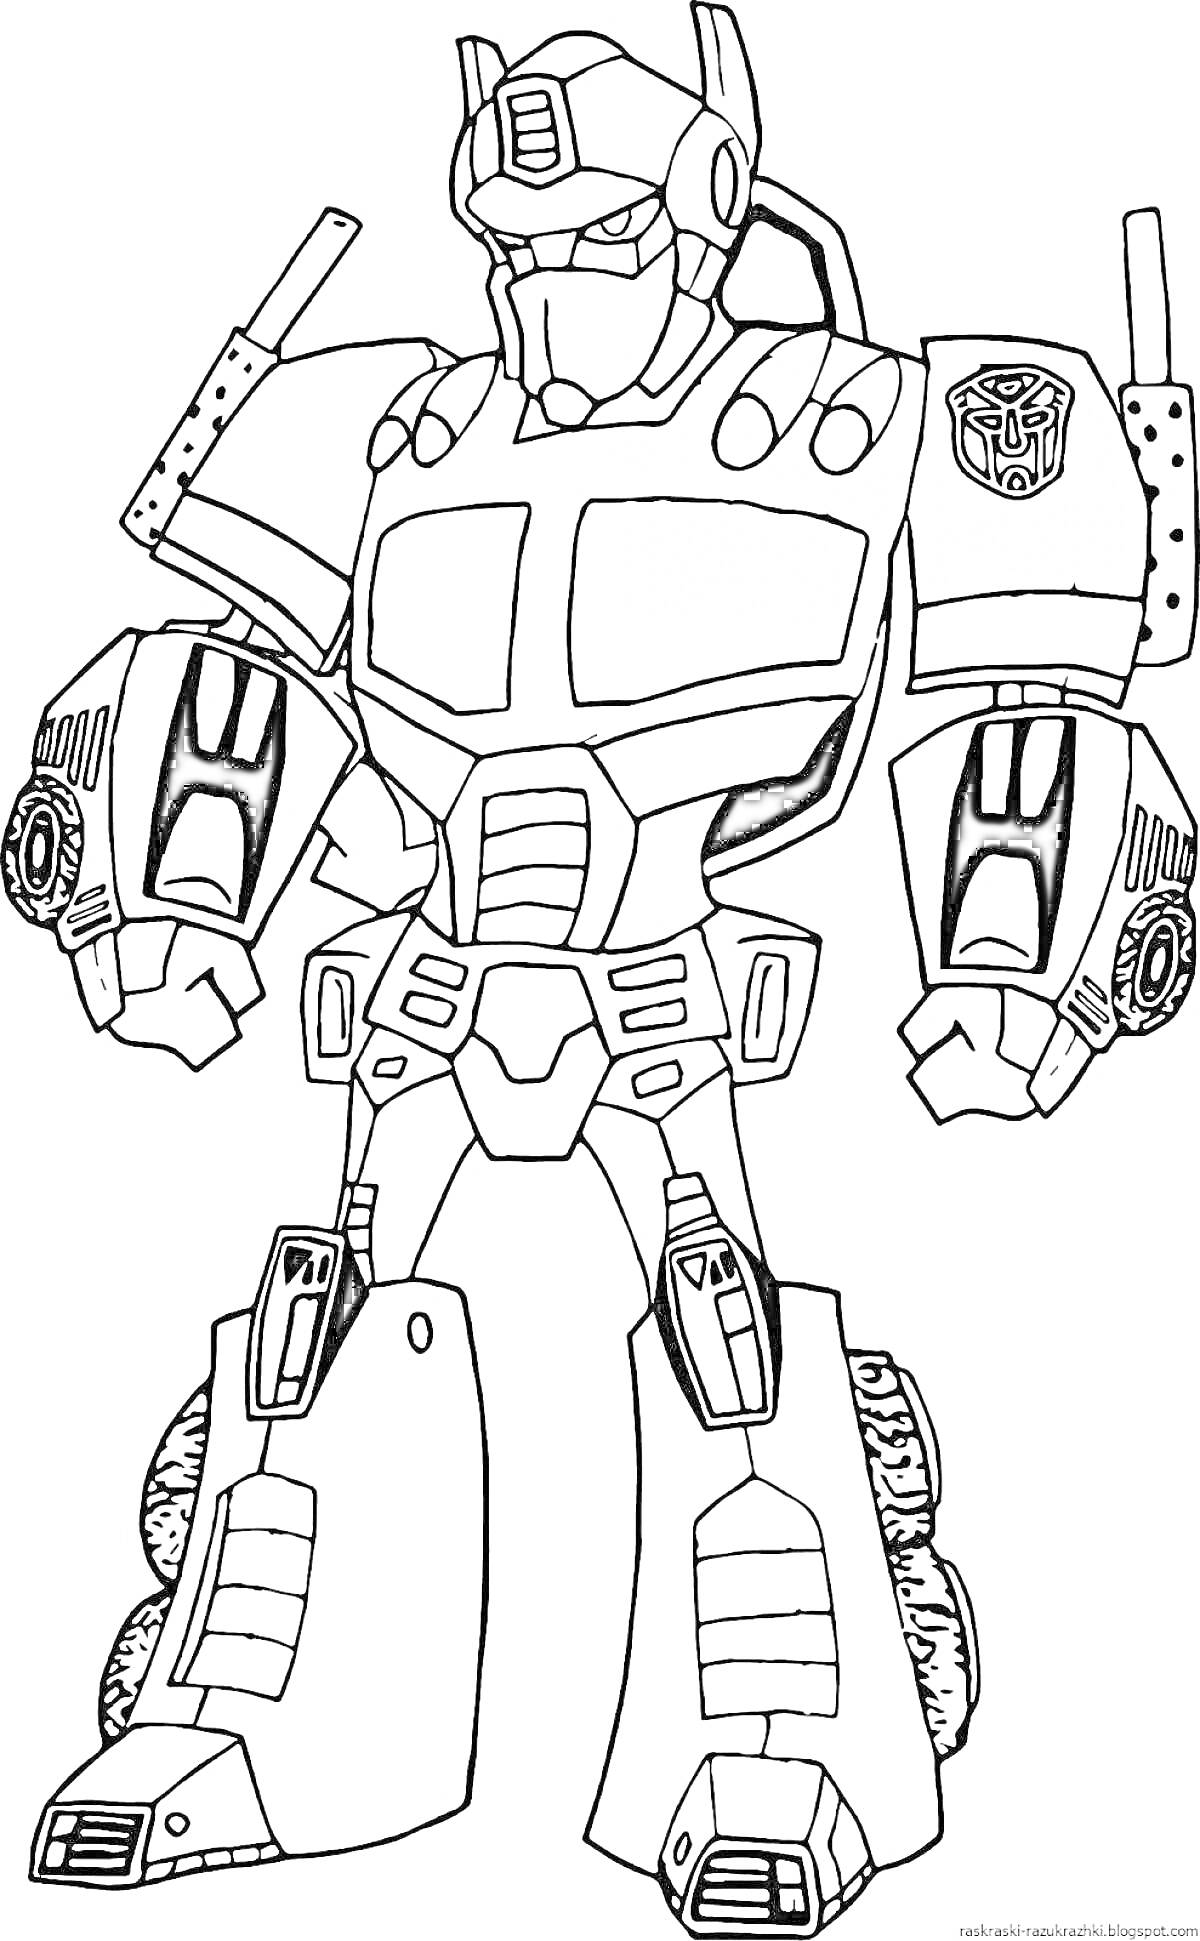 Раскраска Робот с эмблемой, бронированный с деталями на плечах, руках и ногах